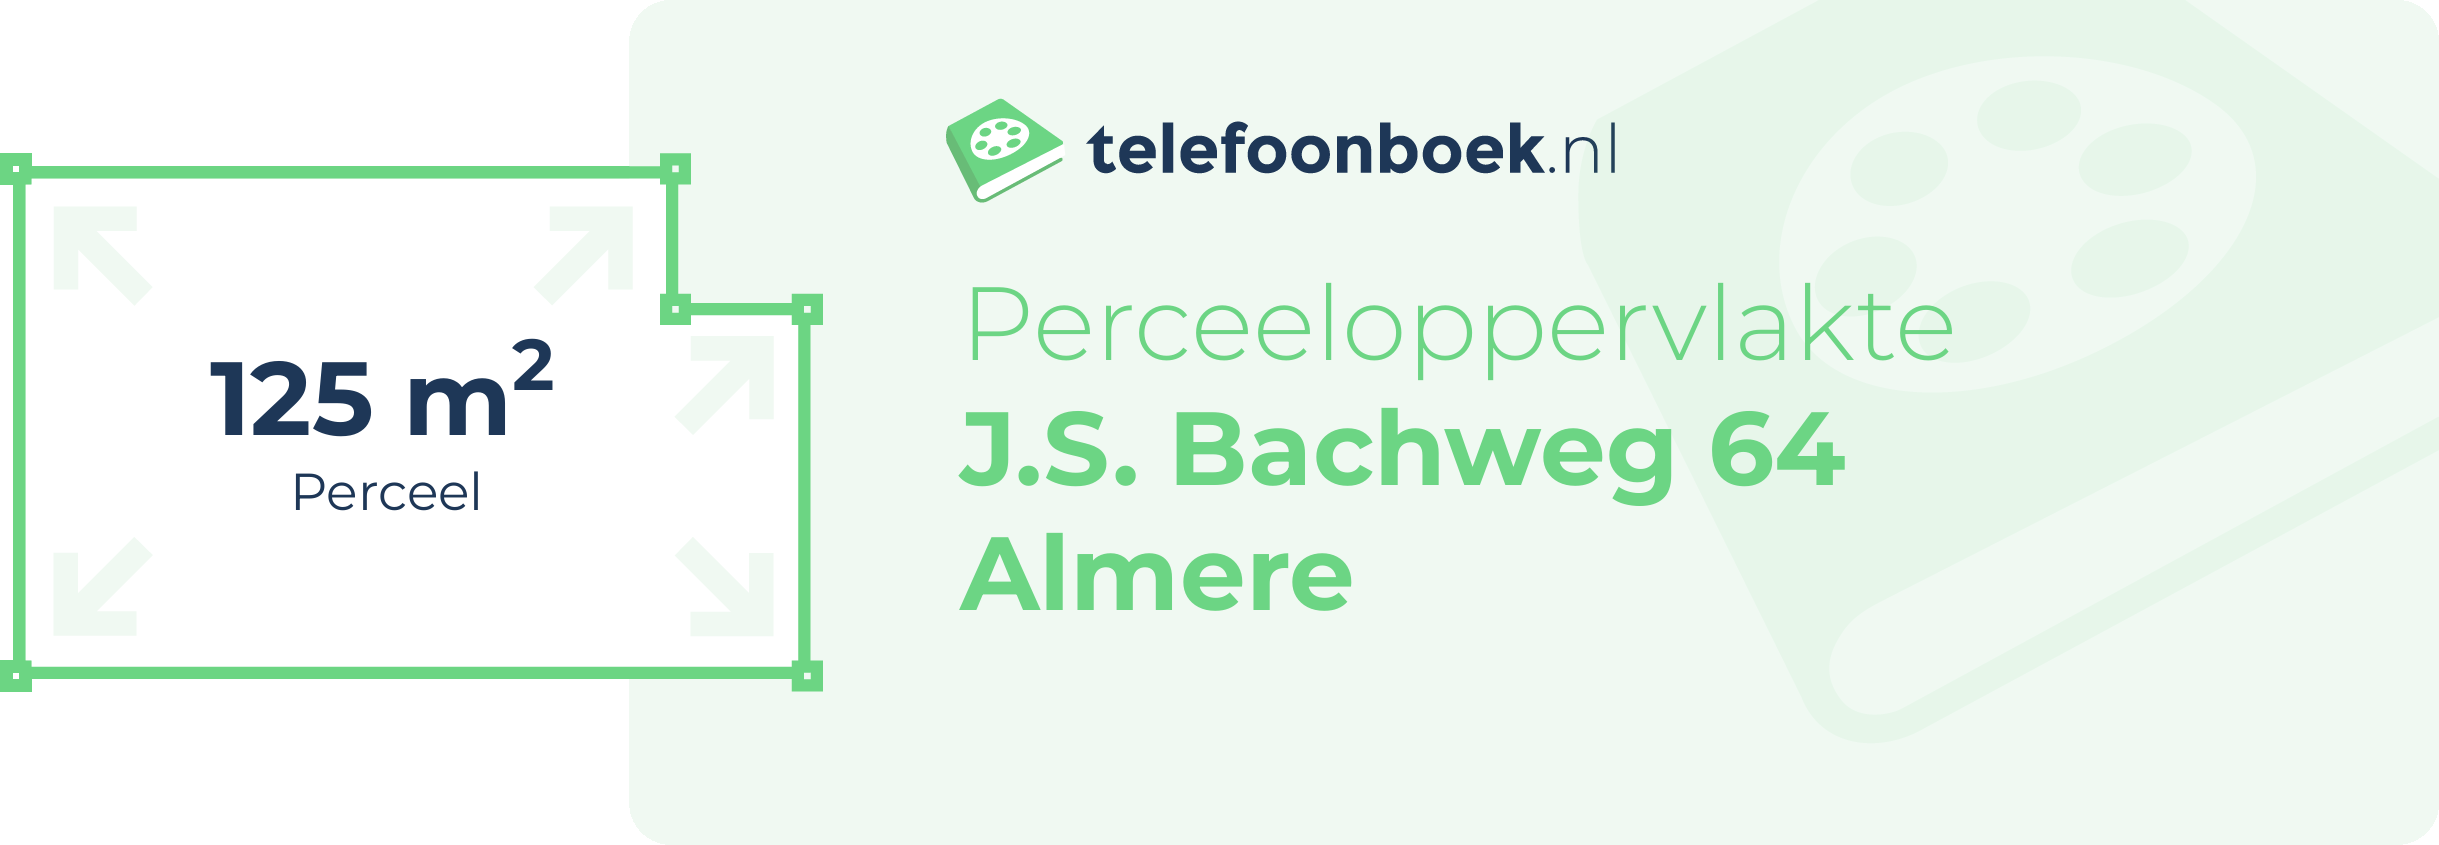 Perceeloppervlakte J.S. Bachweg 64 Almere